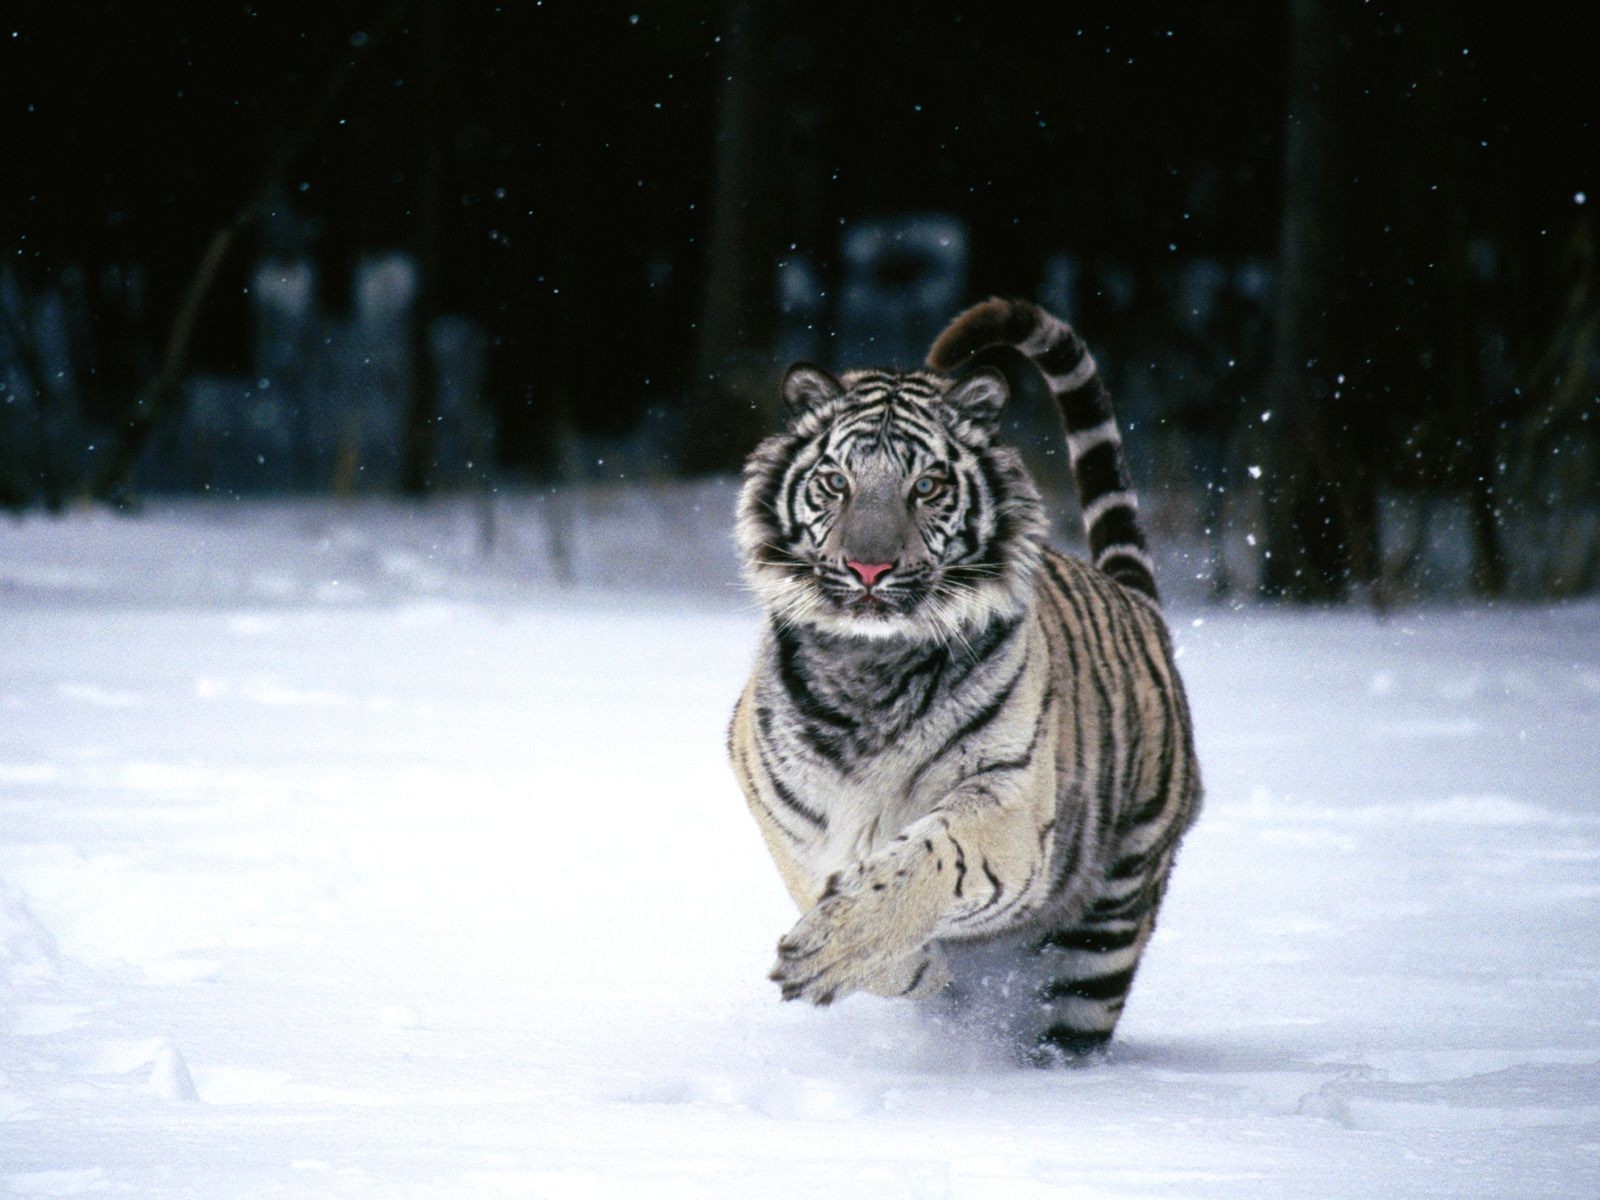 General 1600x1200 tiger snow winter animals big cats mammals